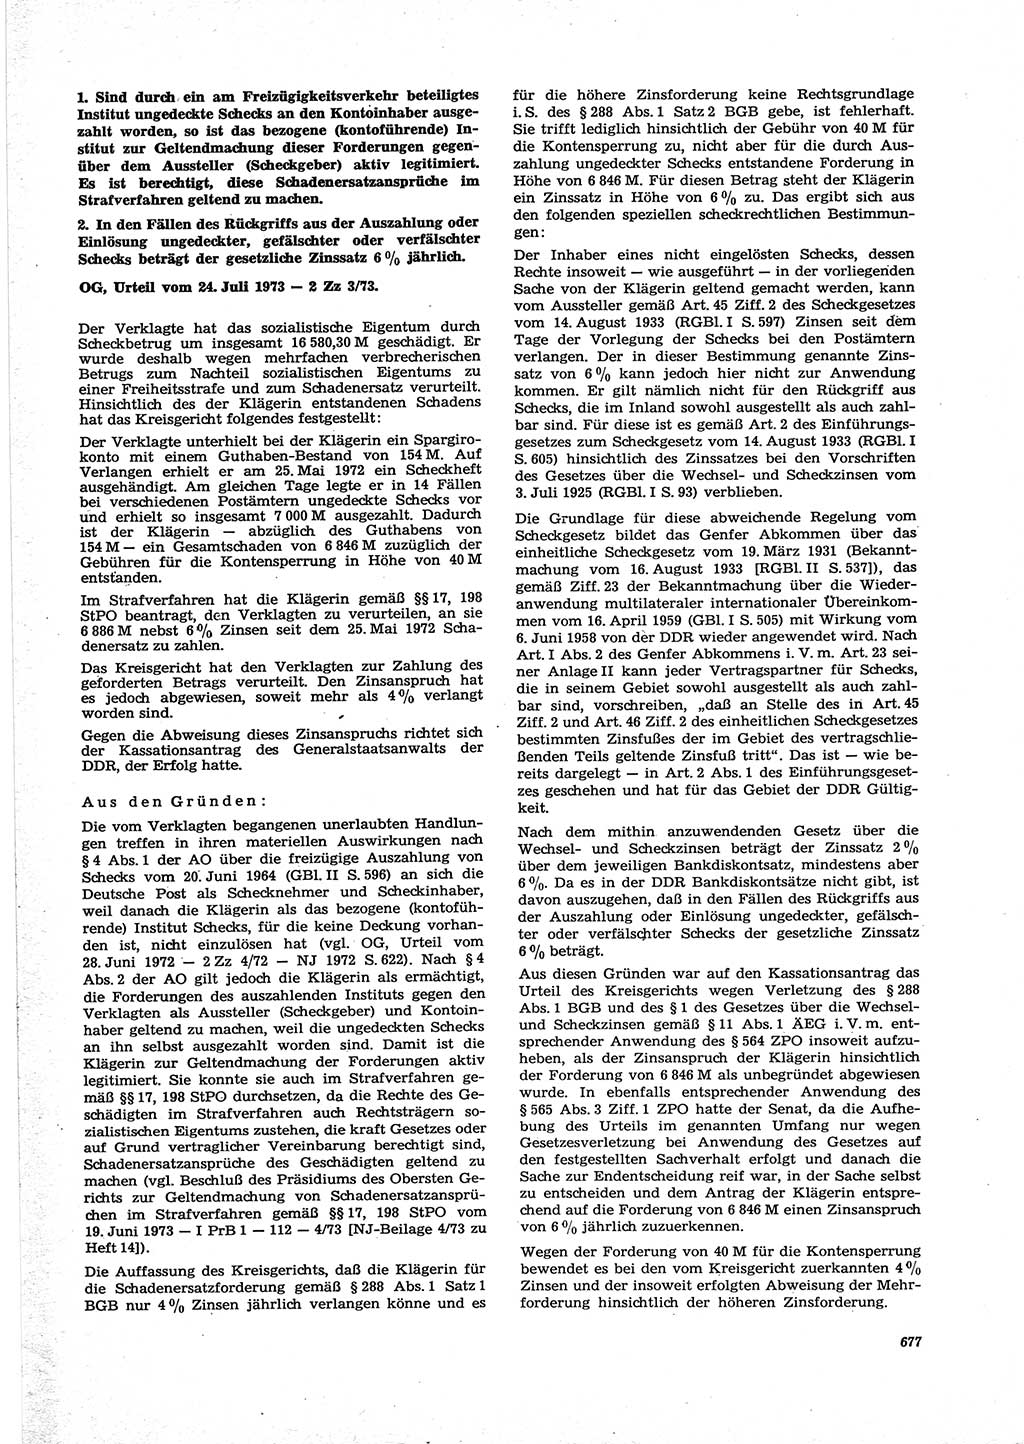 Neue Justiz (NJ), Zeitschrift für Recht und Rechtswissenschaft [Deutsche Demokratische Republik (DDR)], 27. Jahrgang 1973, Seite 677 (NJ DDR 1973, S. 677)